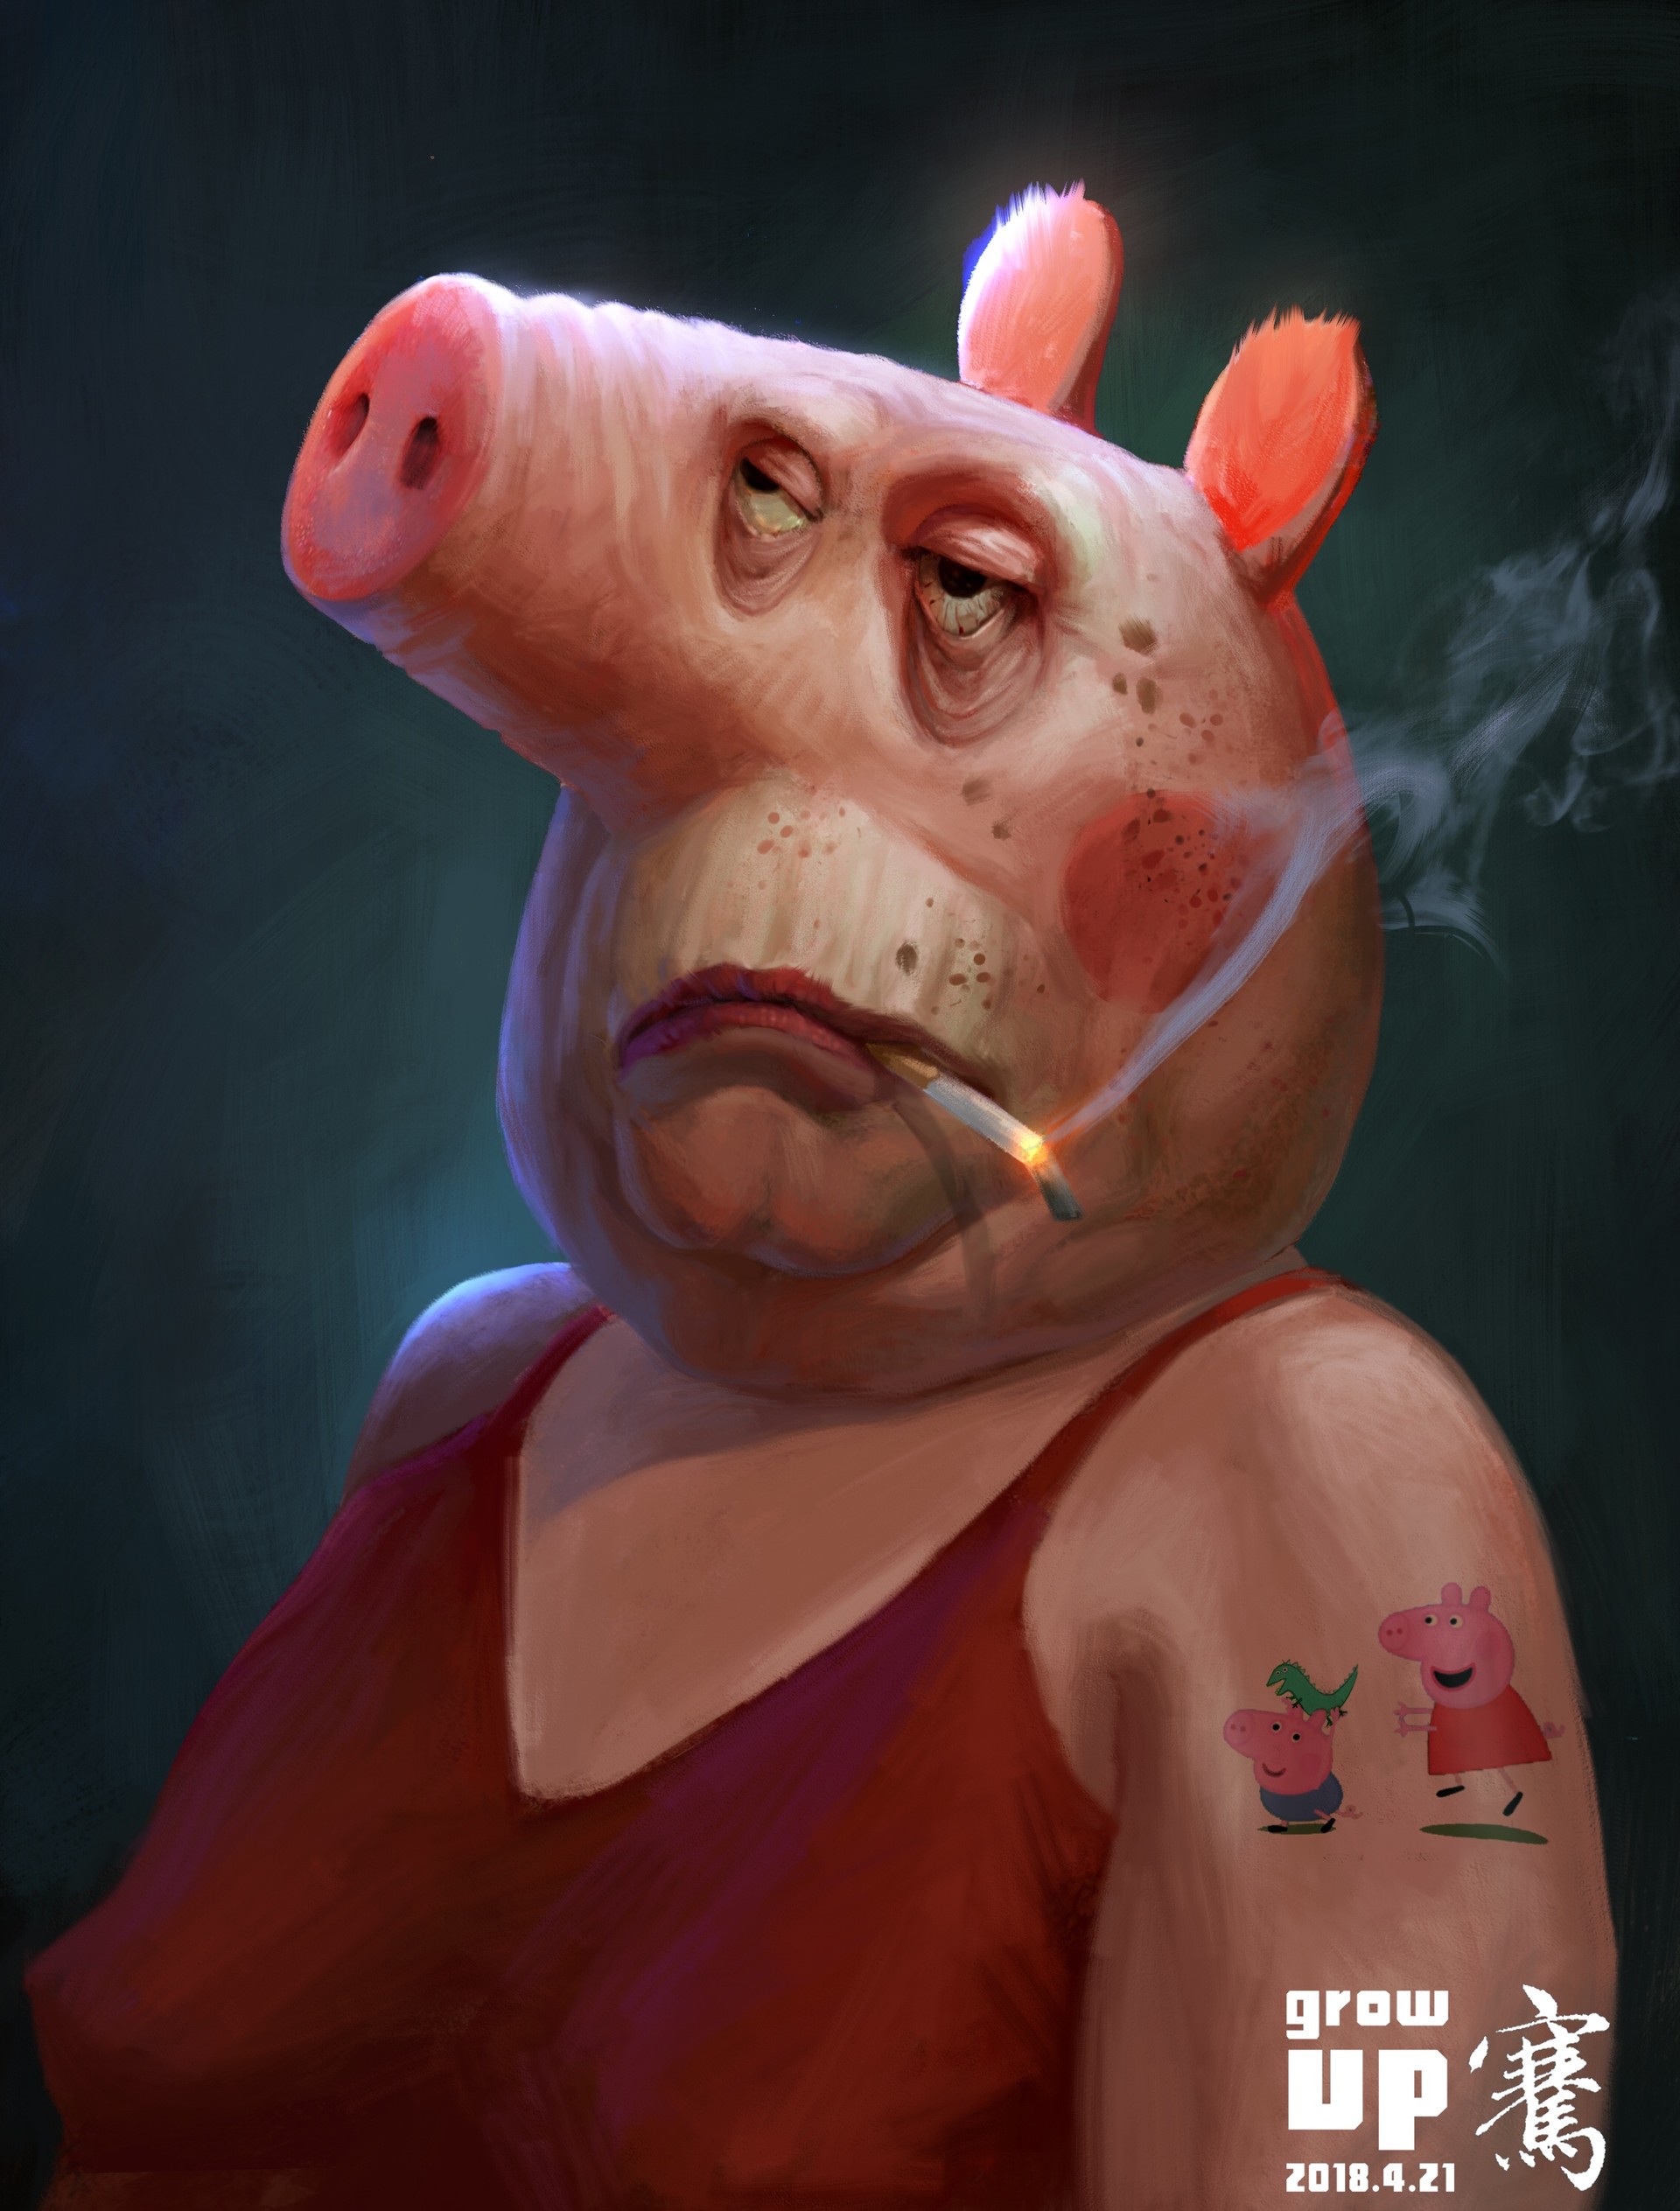 Свинтус ночью. Свиньи. Свинья с сигаретой. Cdbyzm c cbufhjq.